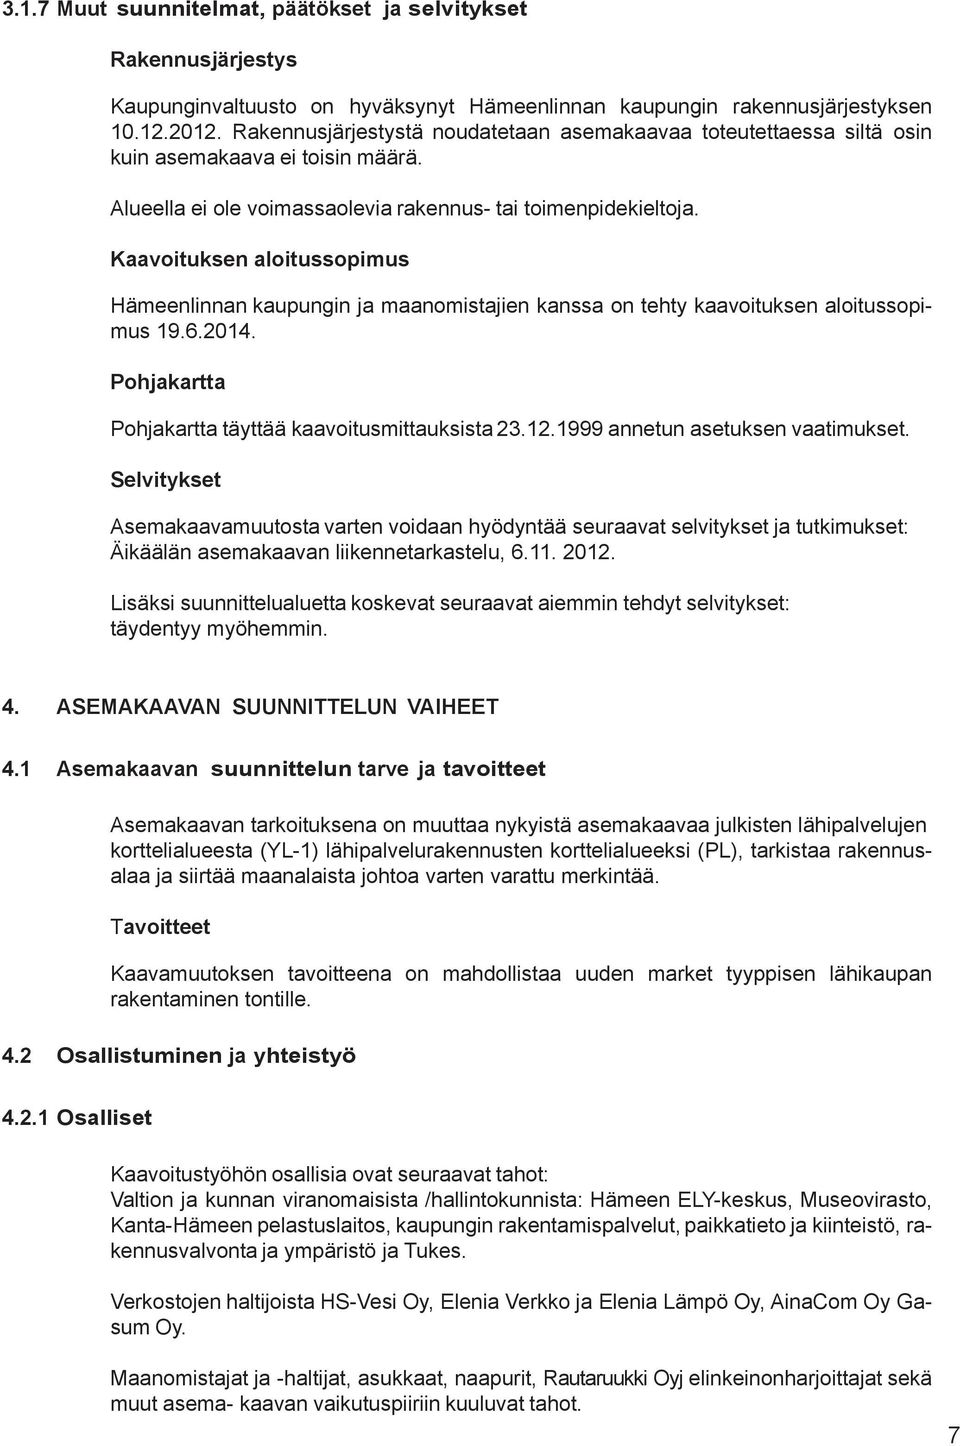 Kaavoituksen aloitussopimus Hämeenlinnan kaupungin ja maanomistajien kanssa on tehty kaavoituksen aloitussopimus 19.6.2014. Pohjakartta Pohjakartta täyttää kaavoitusmittauksista 23.12.